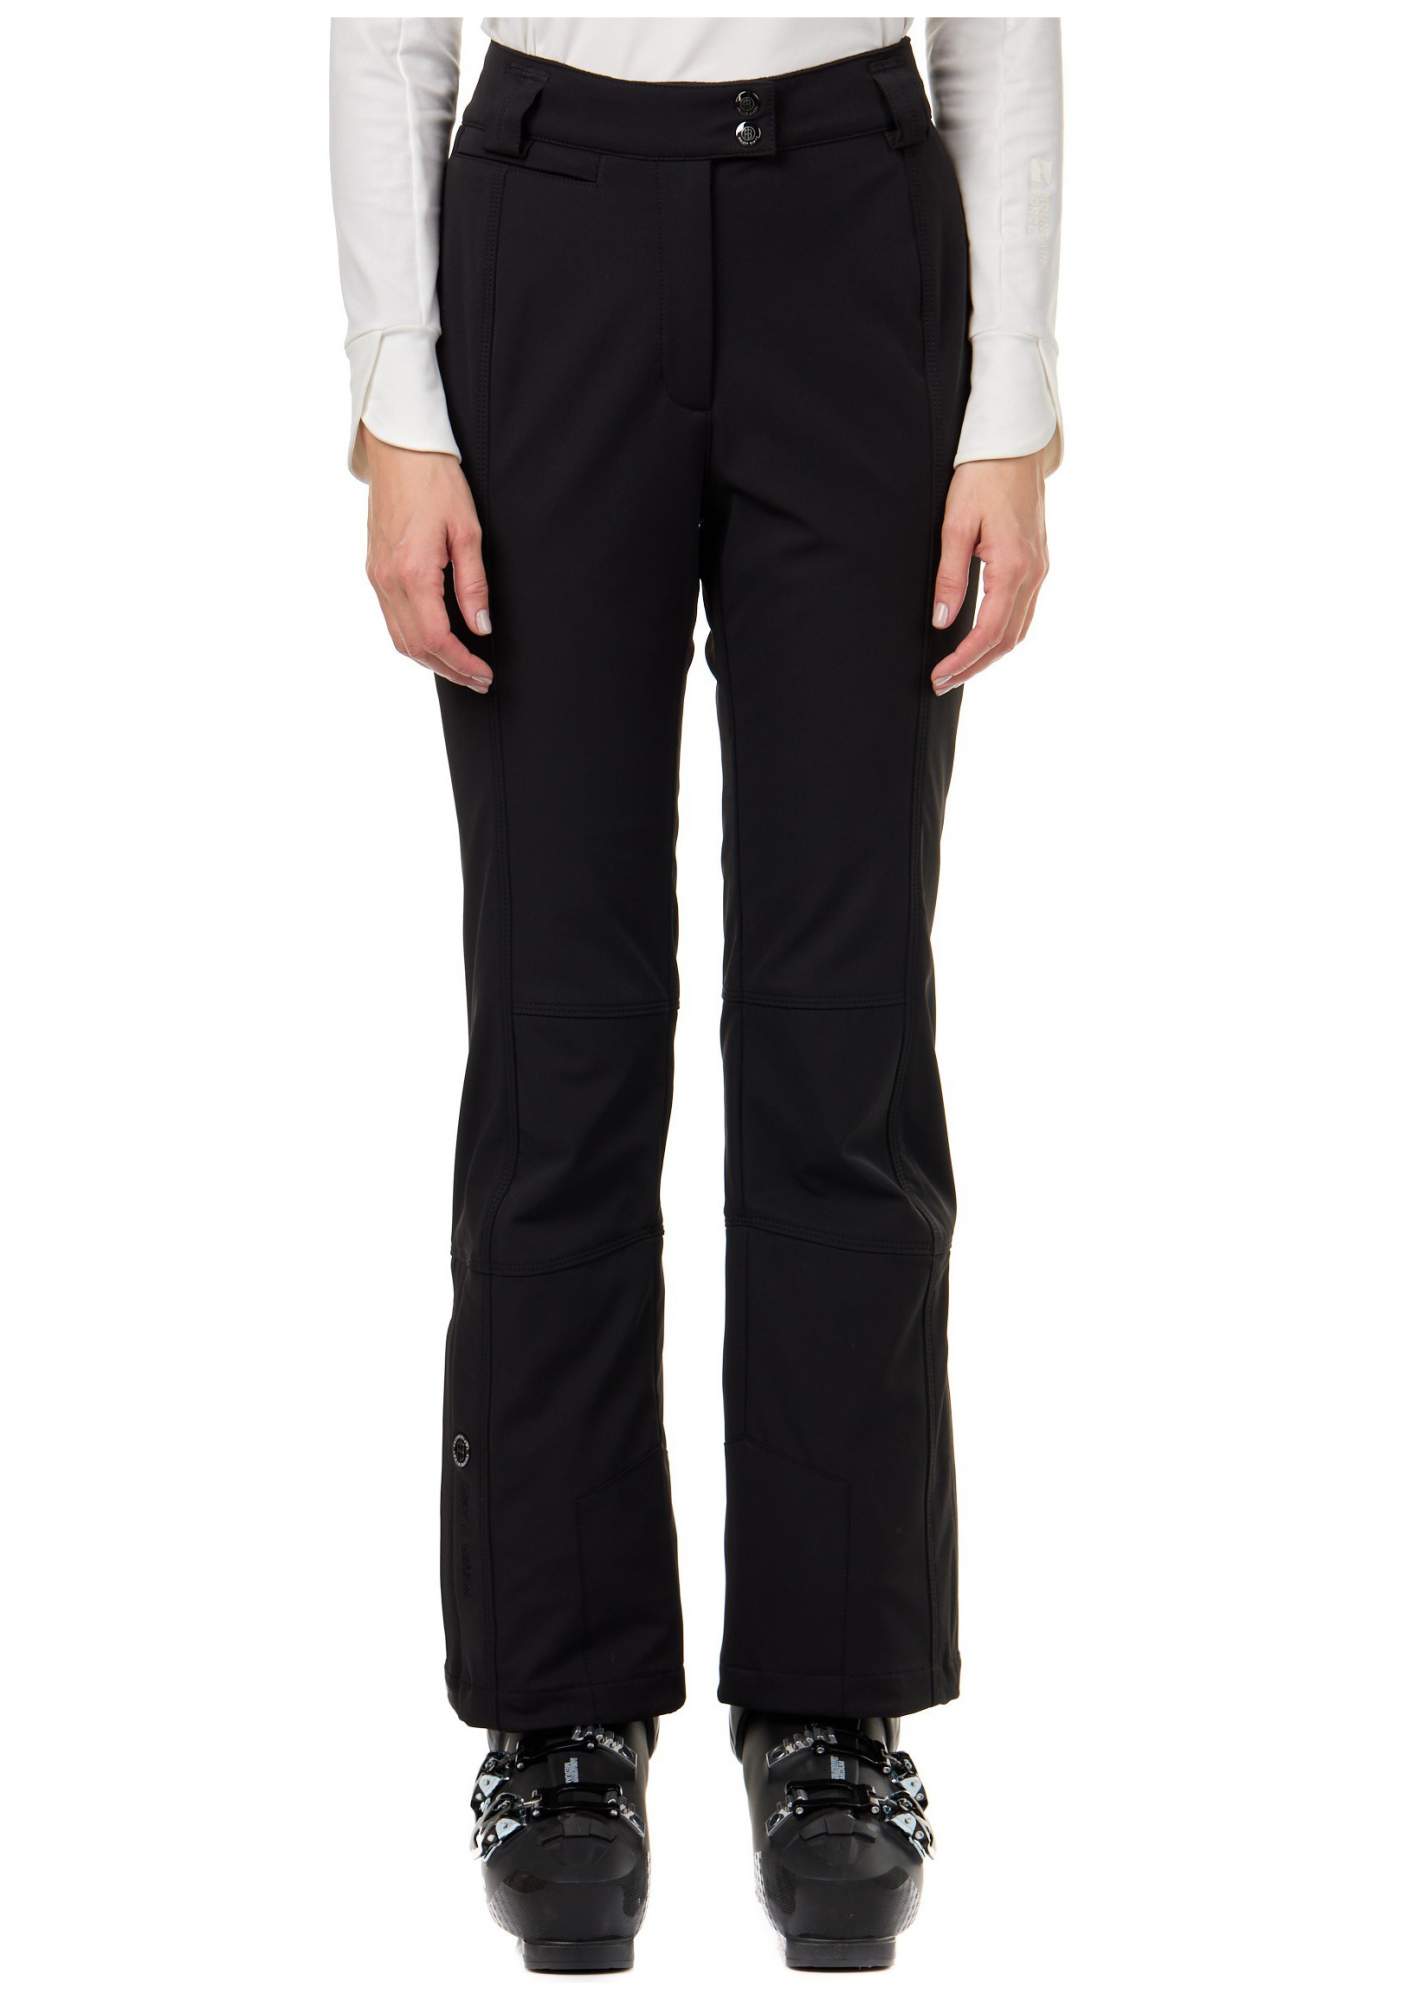 Спортивные брюки Poivre Blanc W21-0820-WO/A, black, M INT